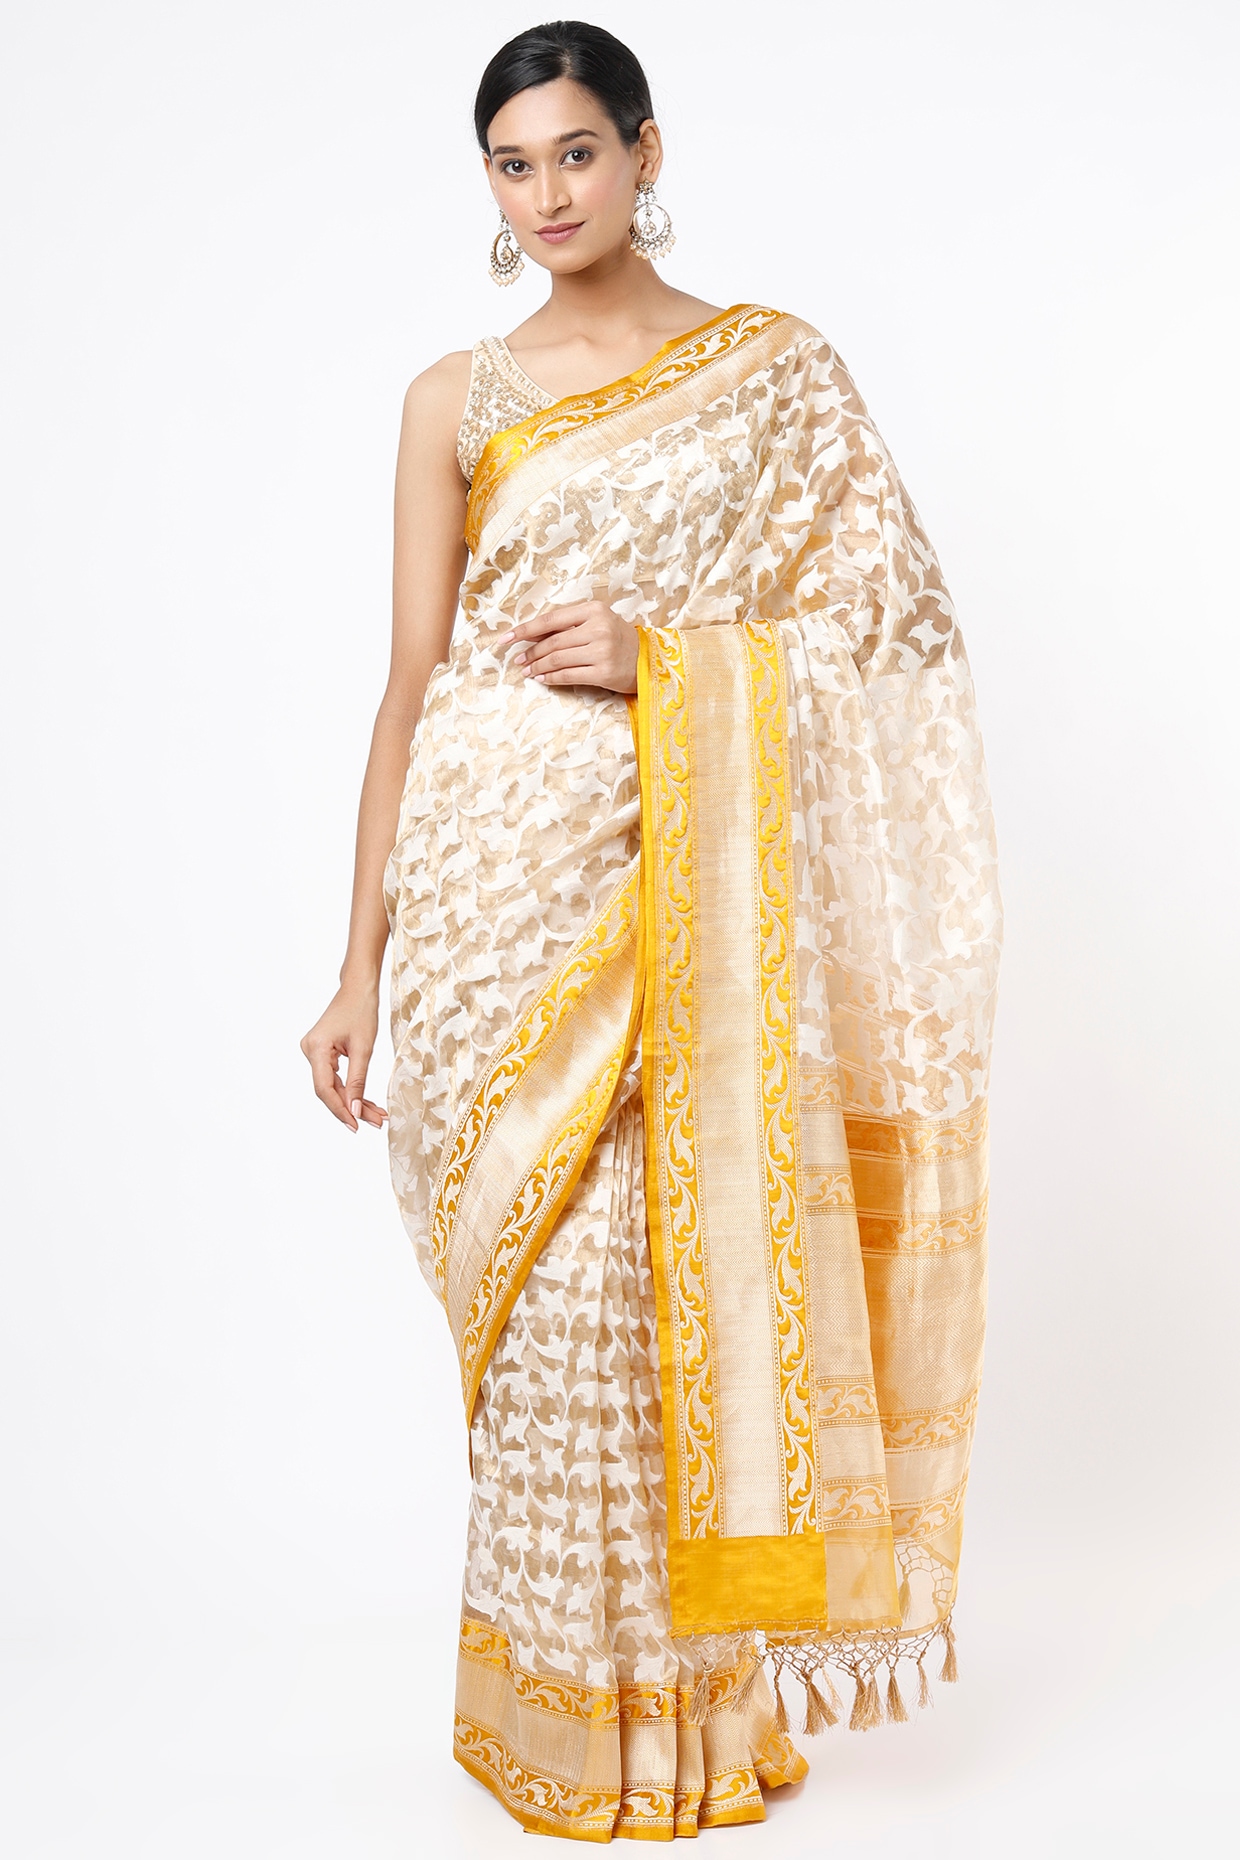 Buy Tissue Sarees Online In India